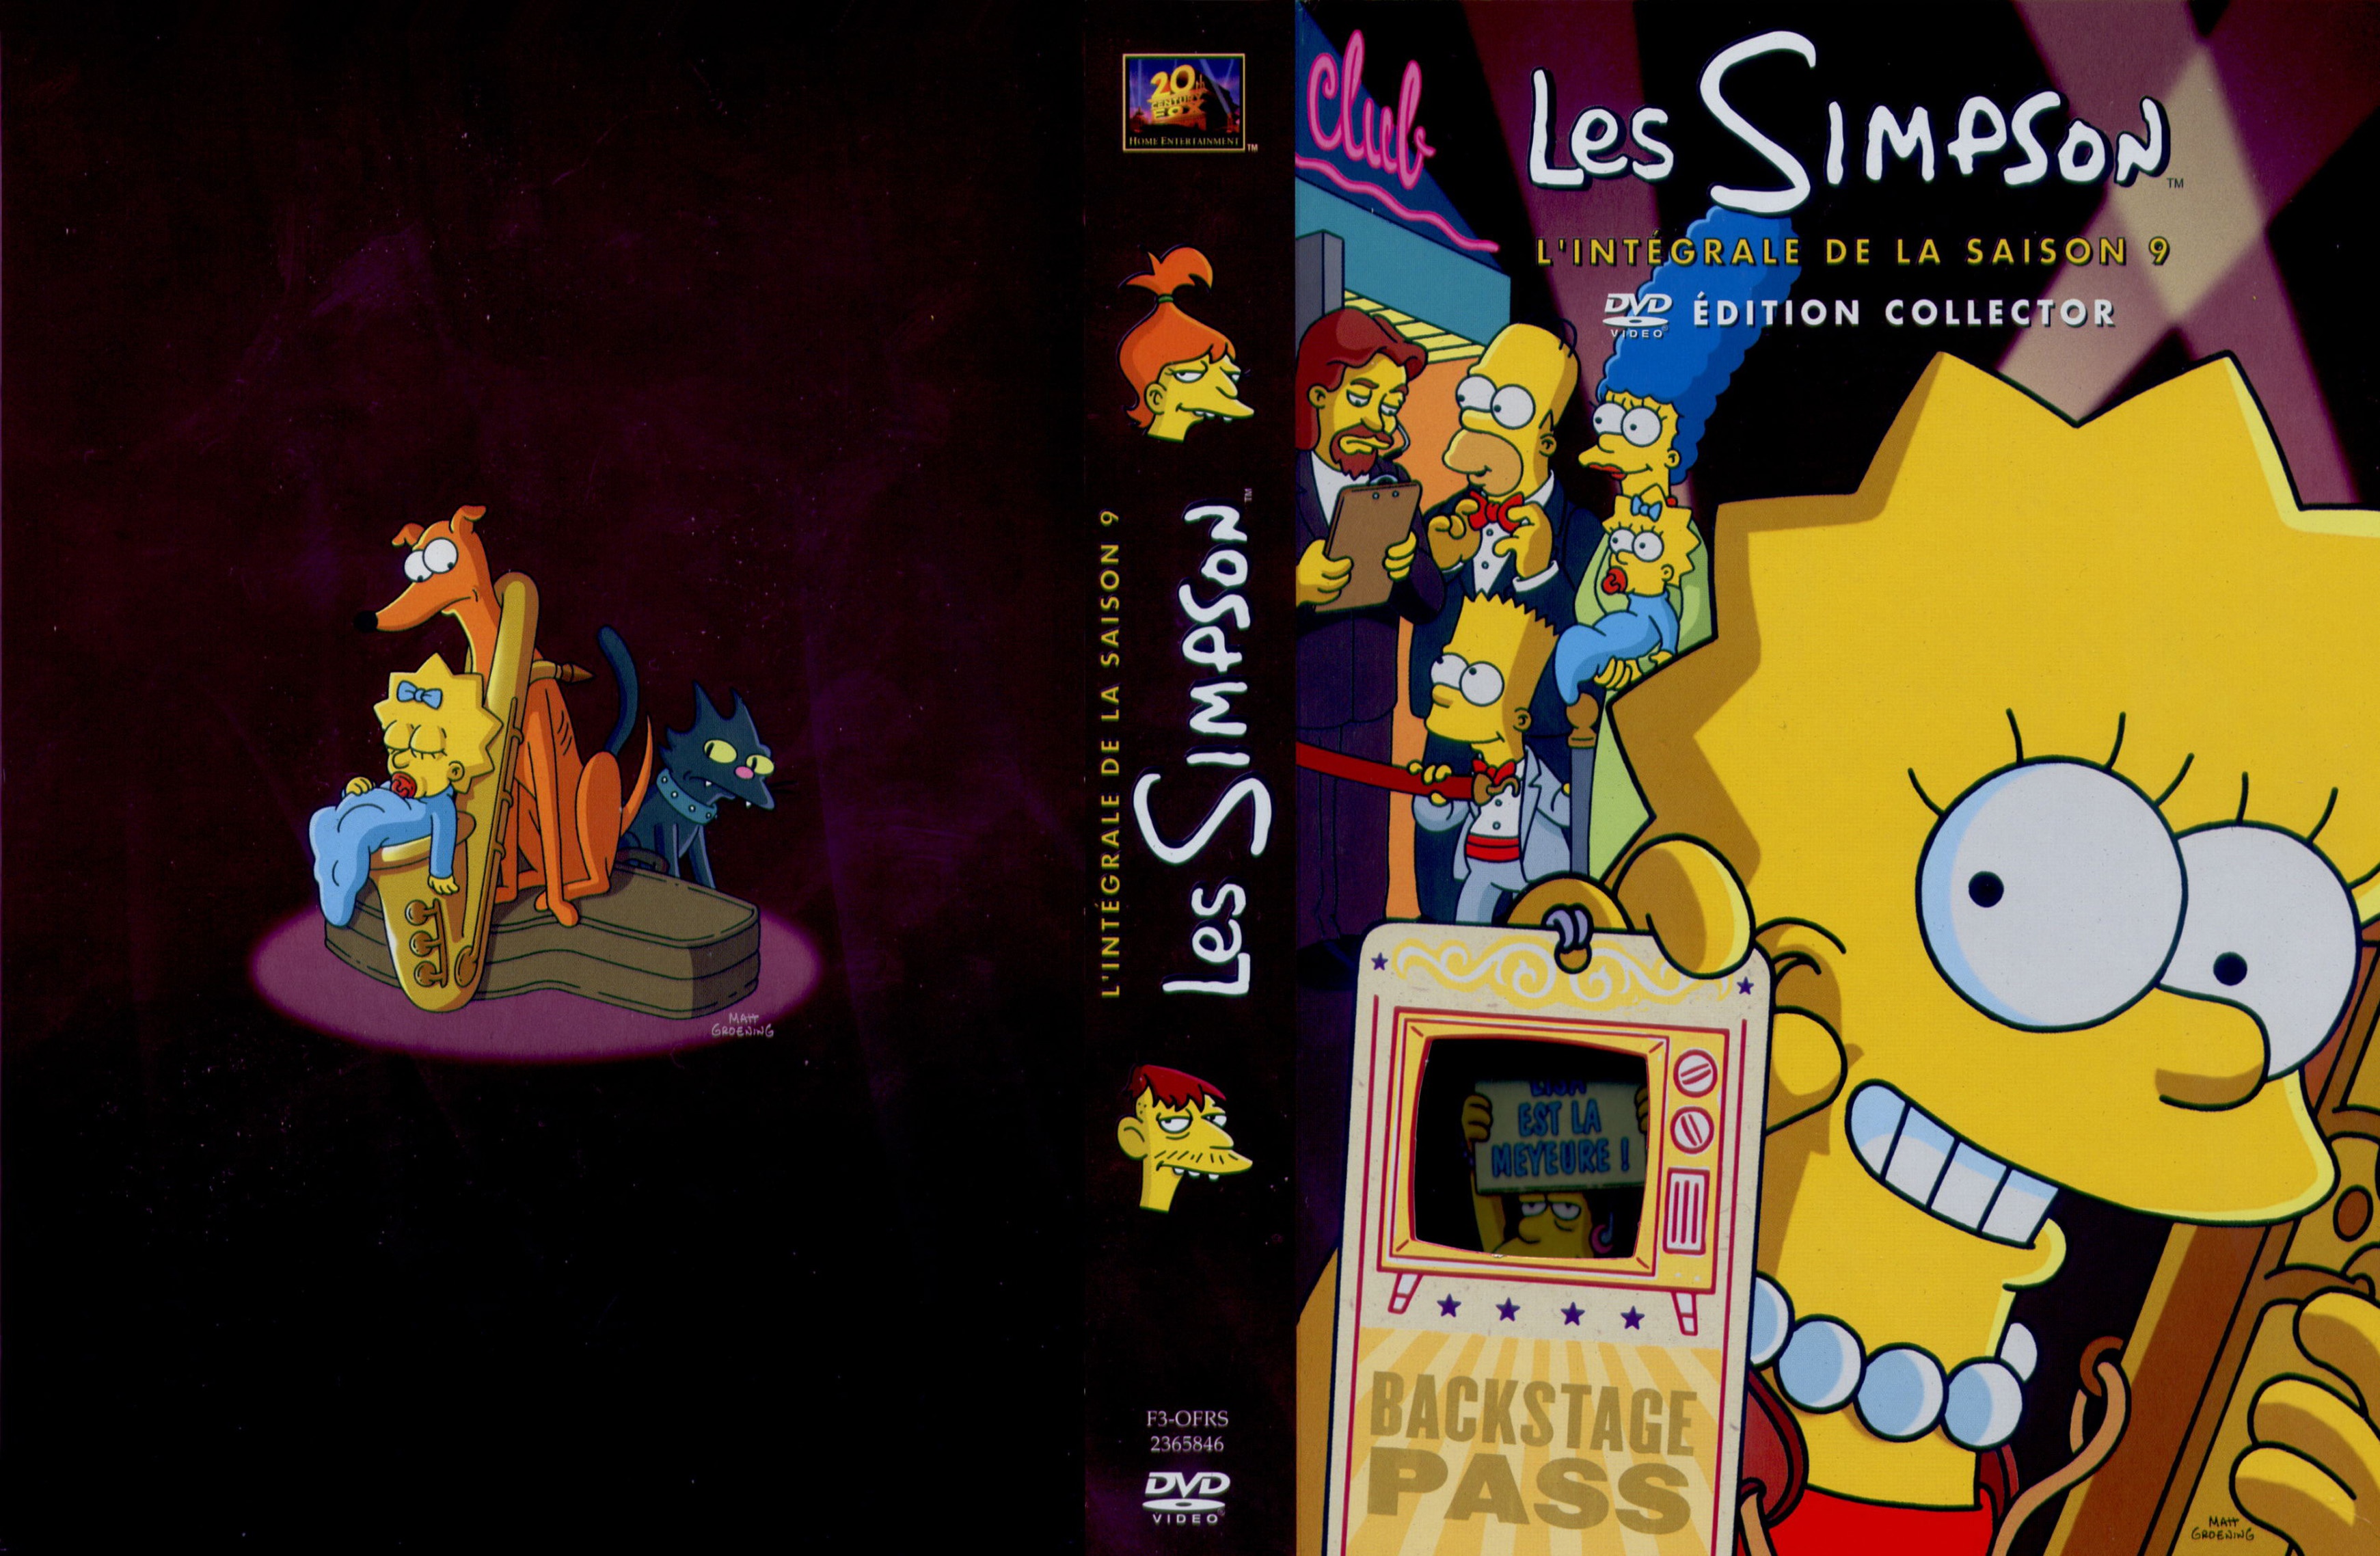 Jaquette DVD Les Simpson saison 09 COFFRET